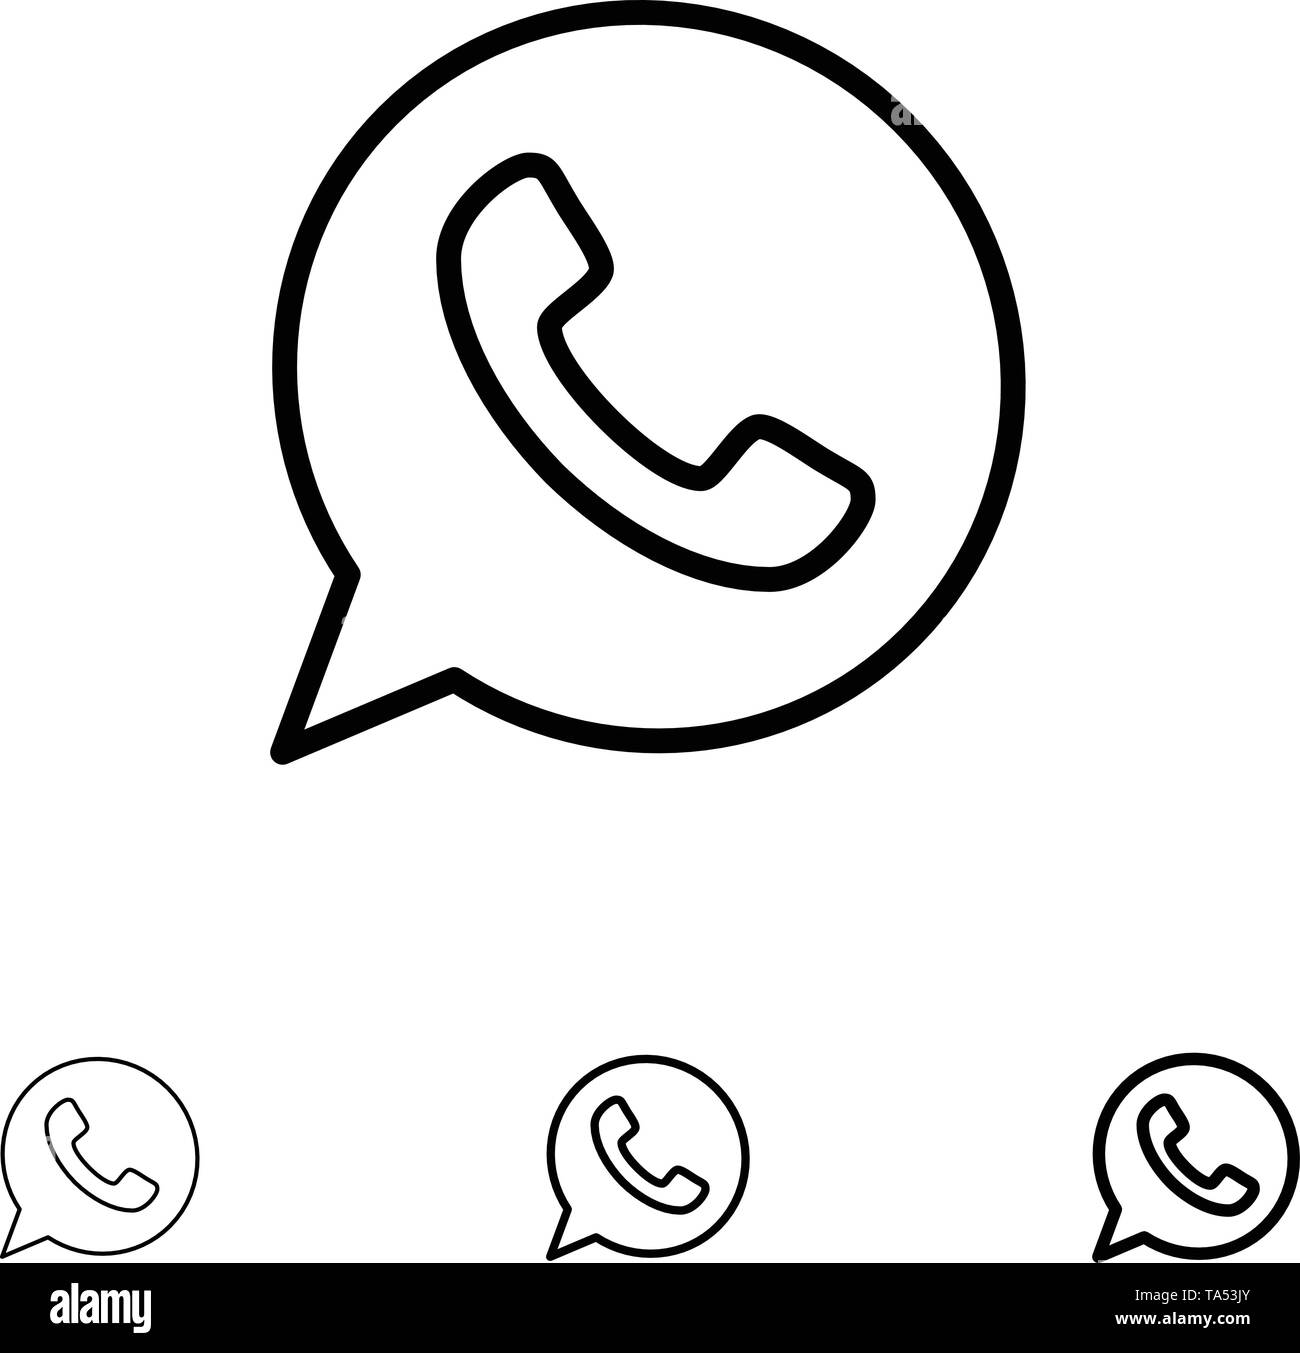 Whatsapp whats app logo Imágenes de stock en blanco y negro - Alamy